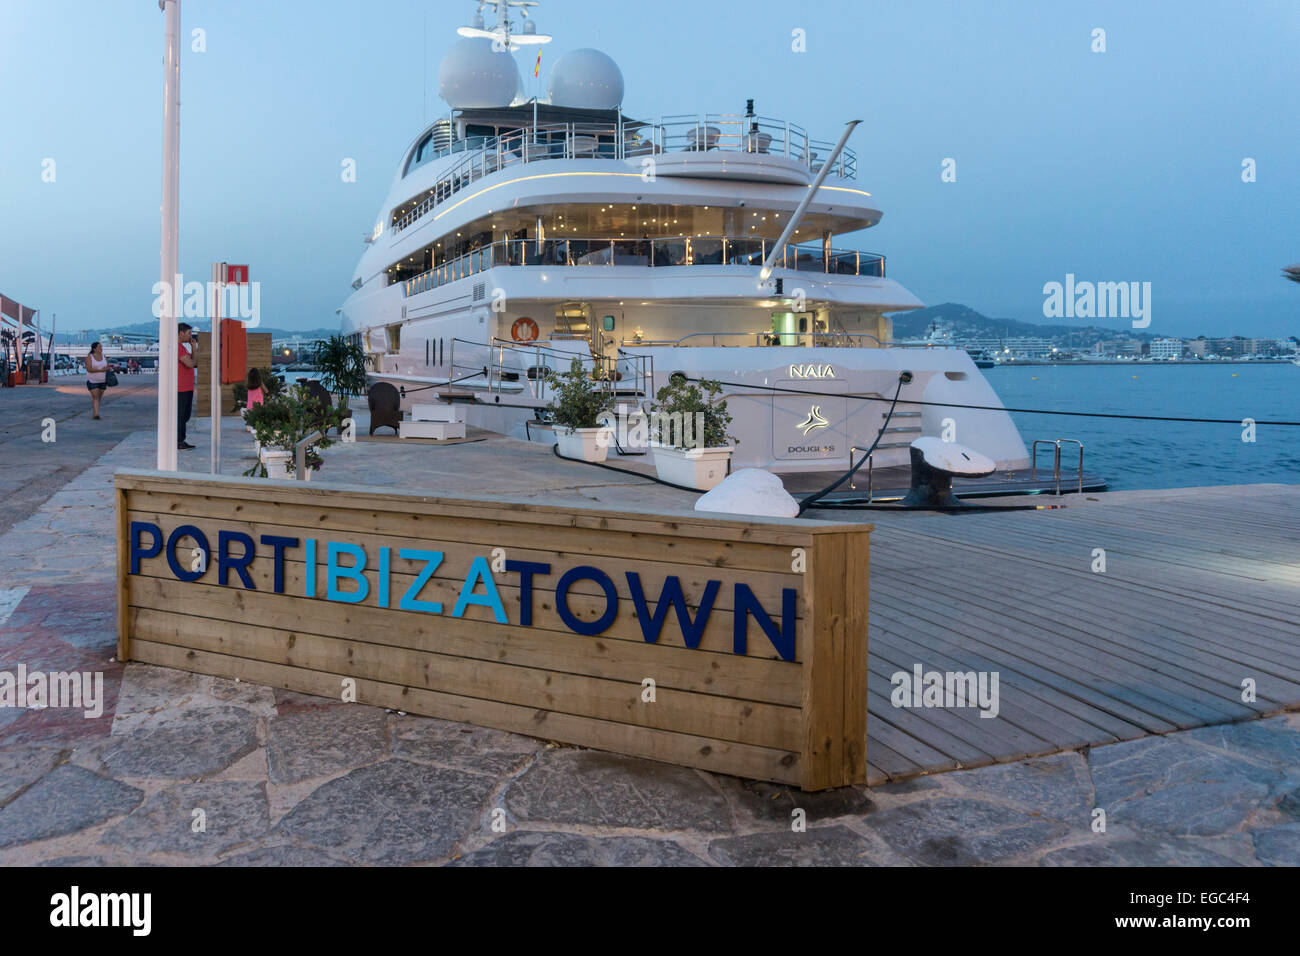 Yacht charter immagini e fotografie stock ad alta risoluzione - Alamy